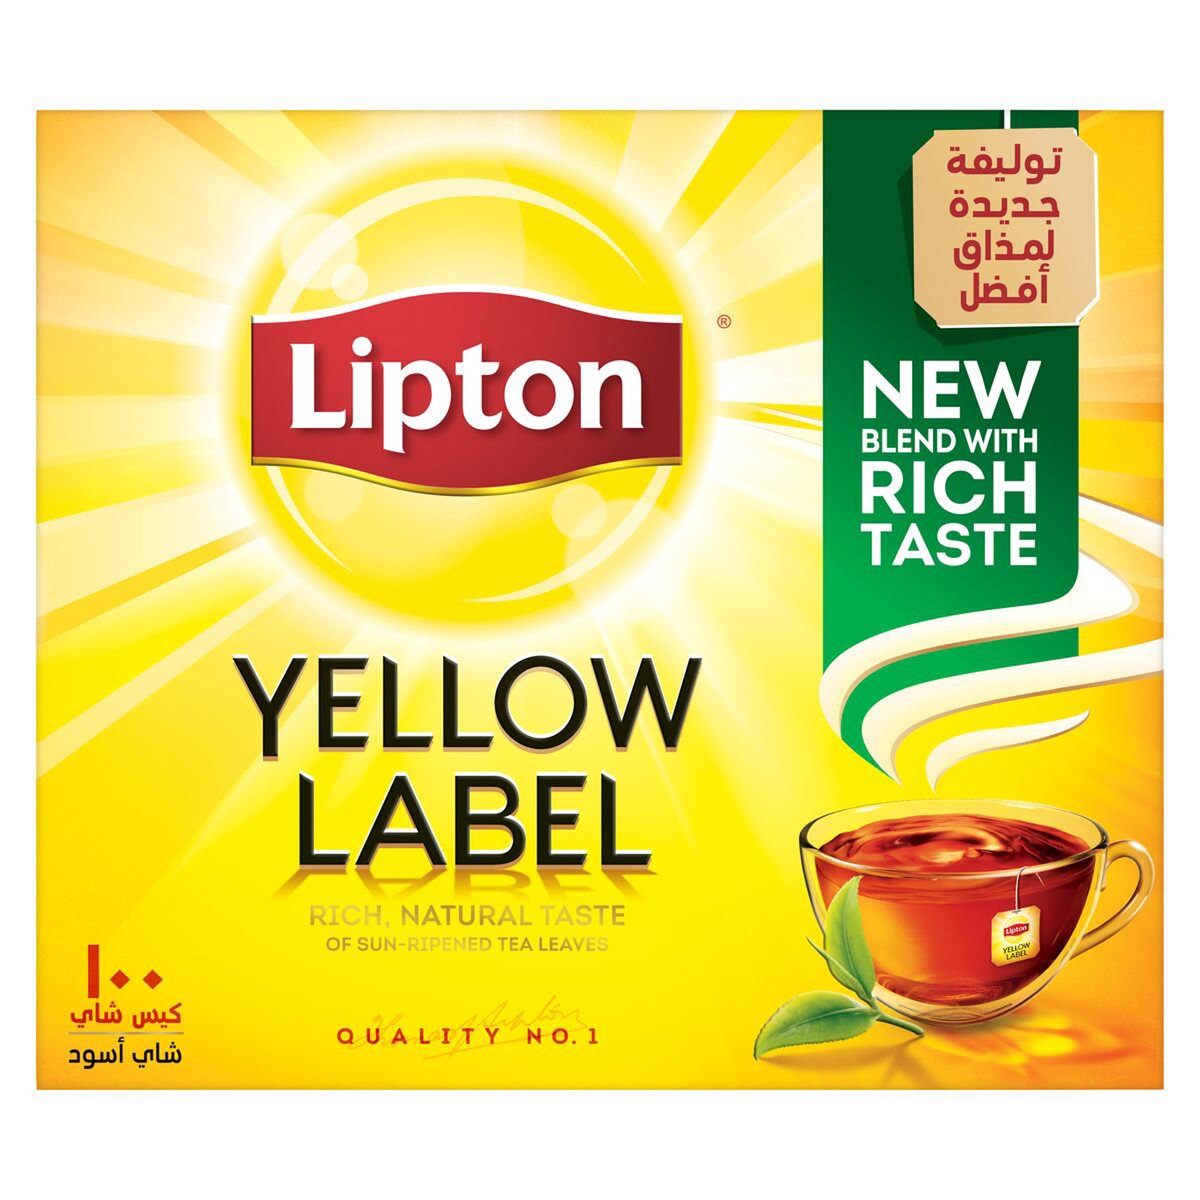 اشتري قم بشراء ليبتون شاي أسود بالعلامة الصفراء 100 كيس شاي Online at Best Price من الموقع - من لولو هايبر ماركت Tea Bag في الكويت